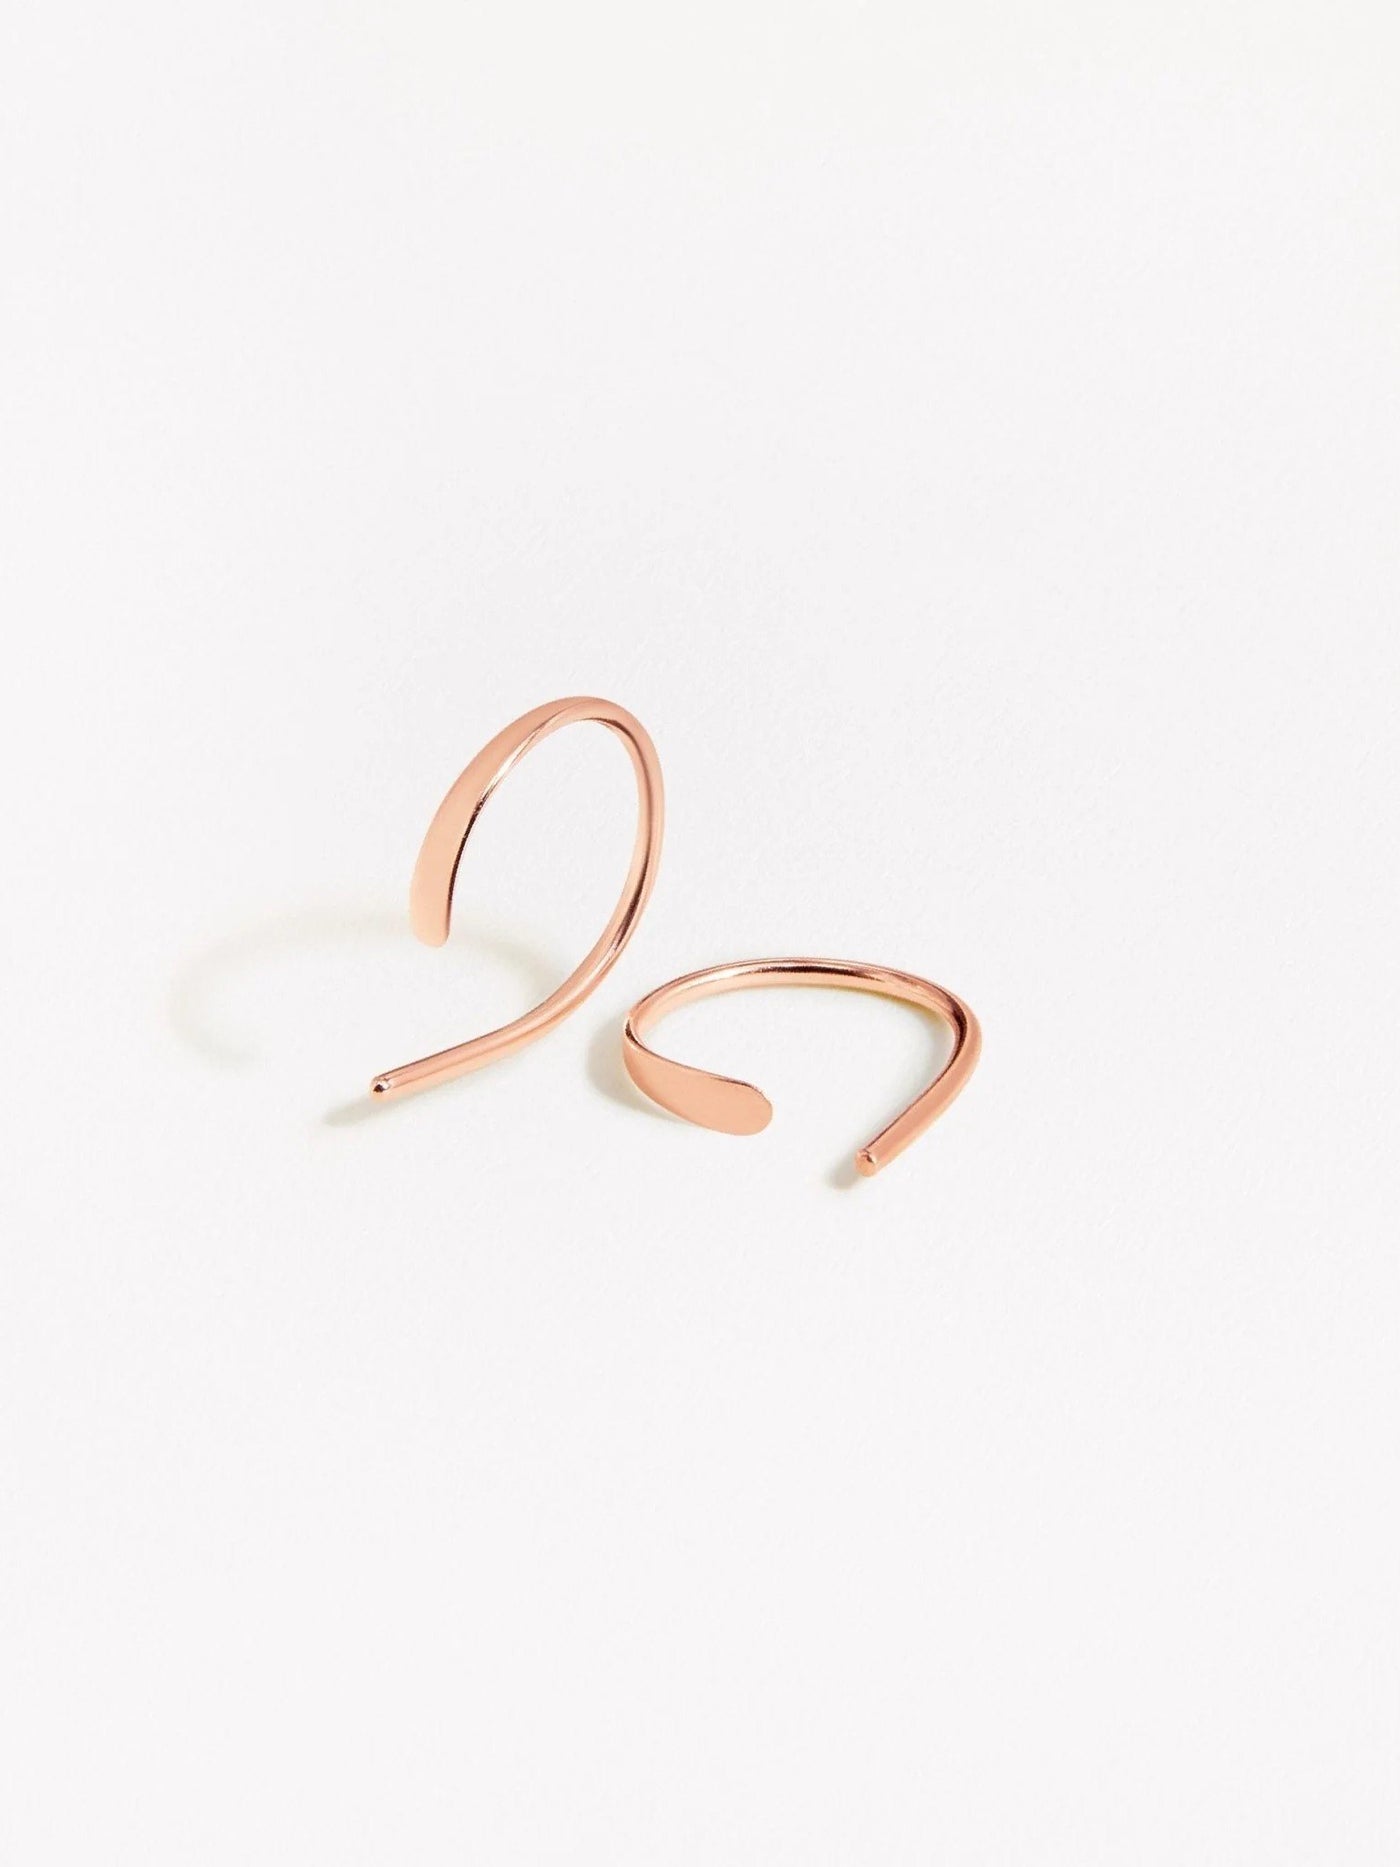 Noe Hoop Earrings - 18K Rose Gold PlatedBackUpItemsBest Friend GiftLunai Jewelry